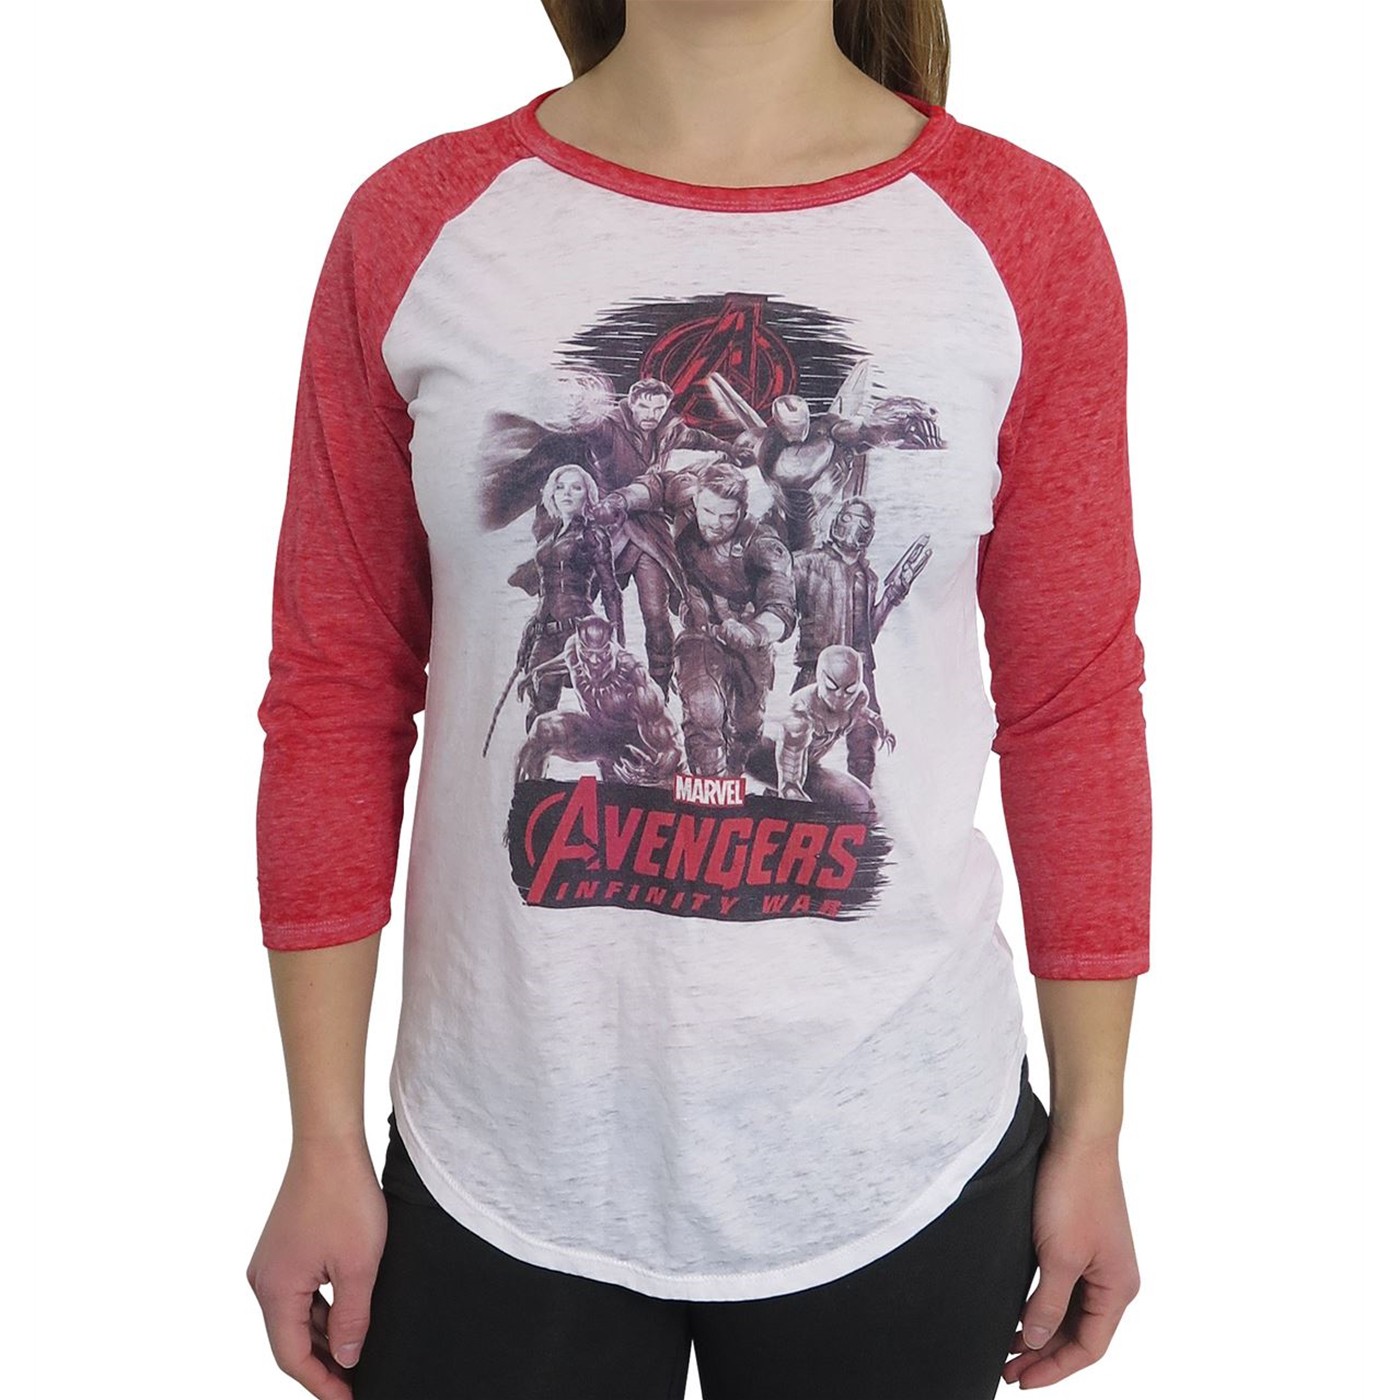 Avengers Infinity War Women's Baseball T-Shirt